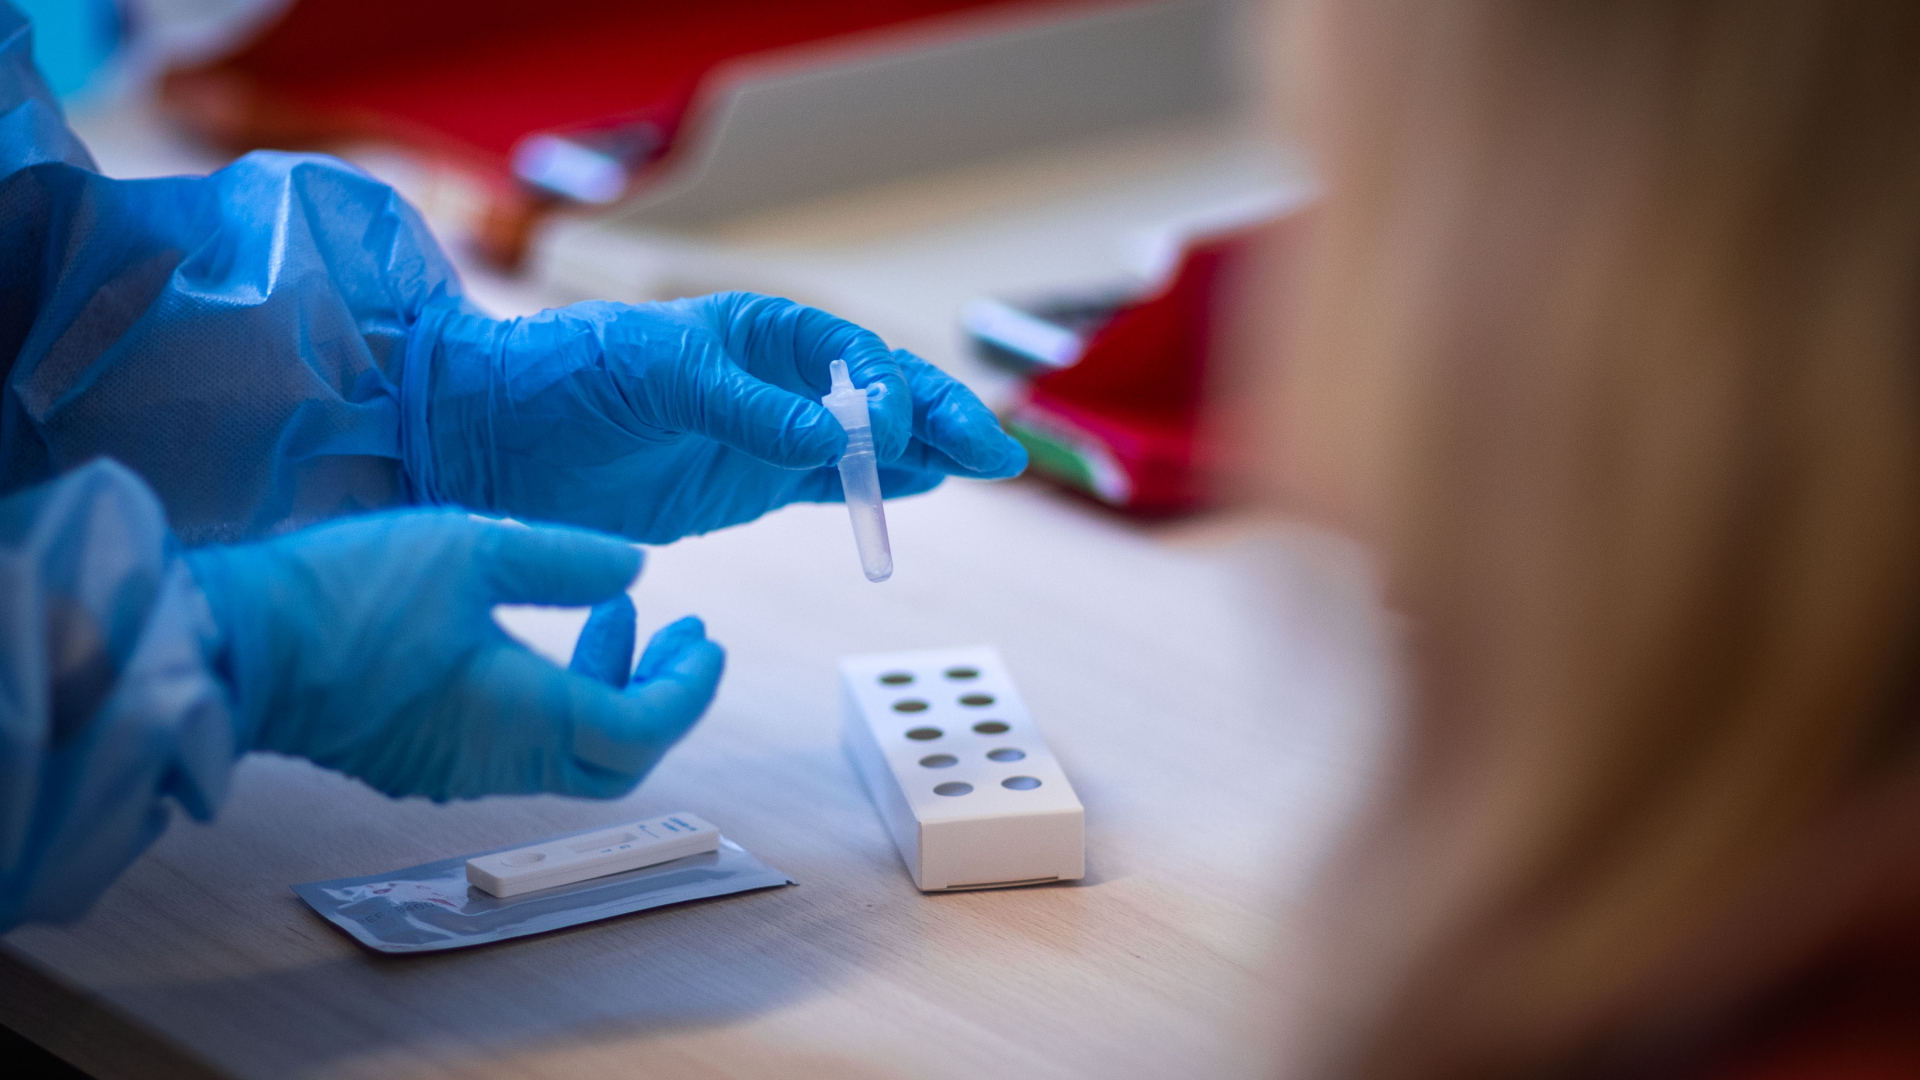 Ein Antigen-Test auf Covid-19 wird nach der Eröffnung des kommunalen Corona-Testzentrums des Landkreises Ludwigslust bearbeitet (Archvbild). | dpa